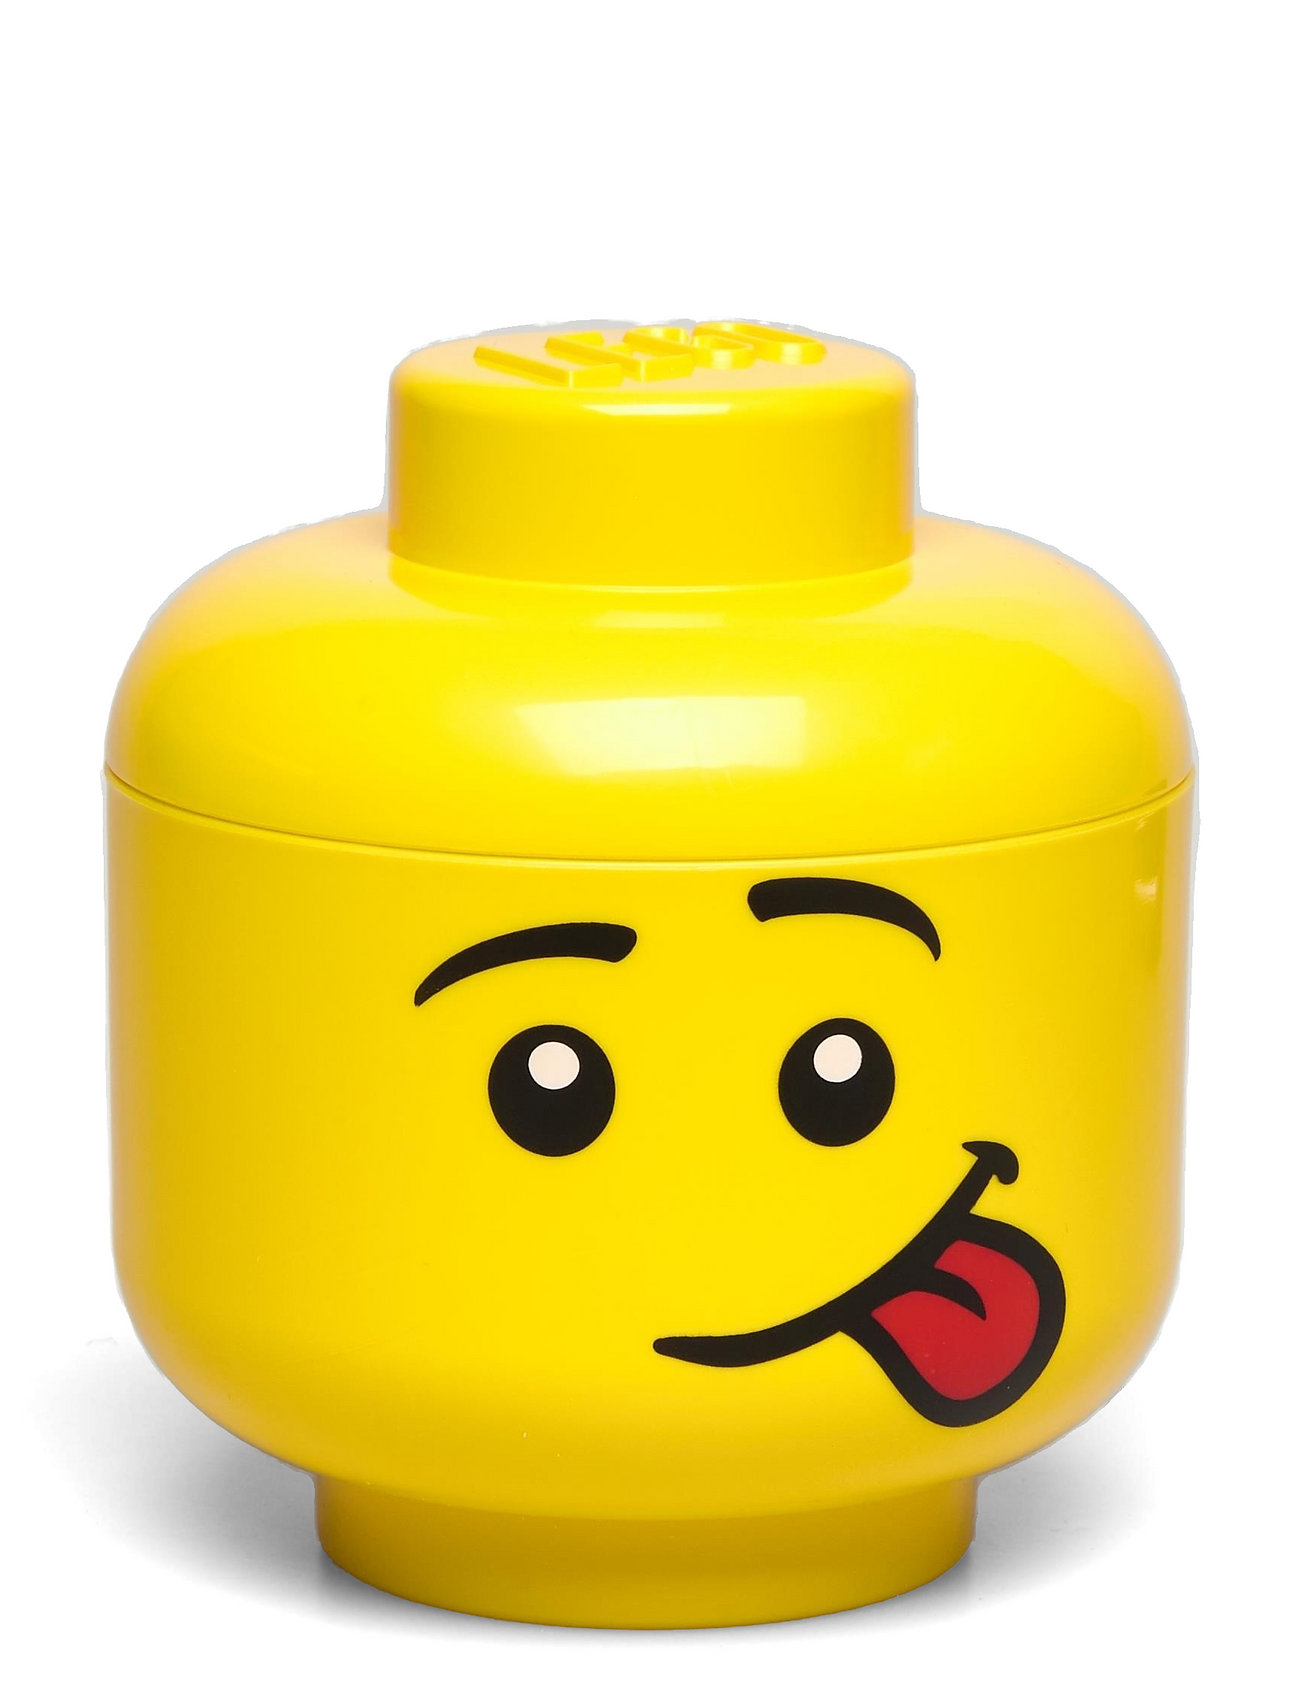 Lego Mini Head - Girl Home Kids Decor Storage Storage Boxes Yellow LEGO STORAGE